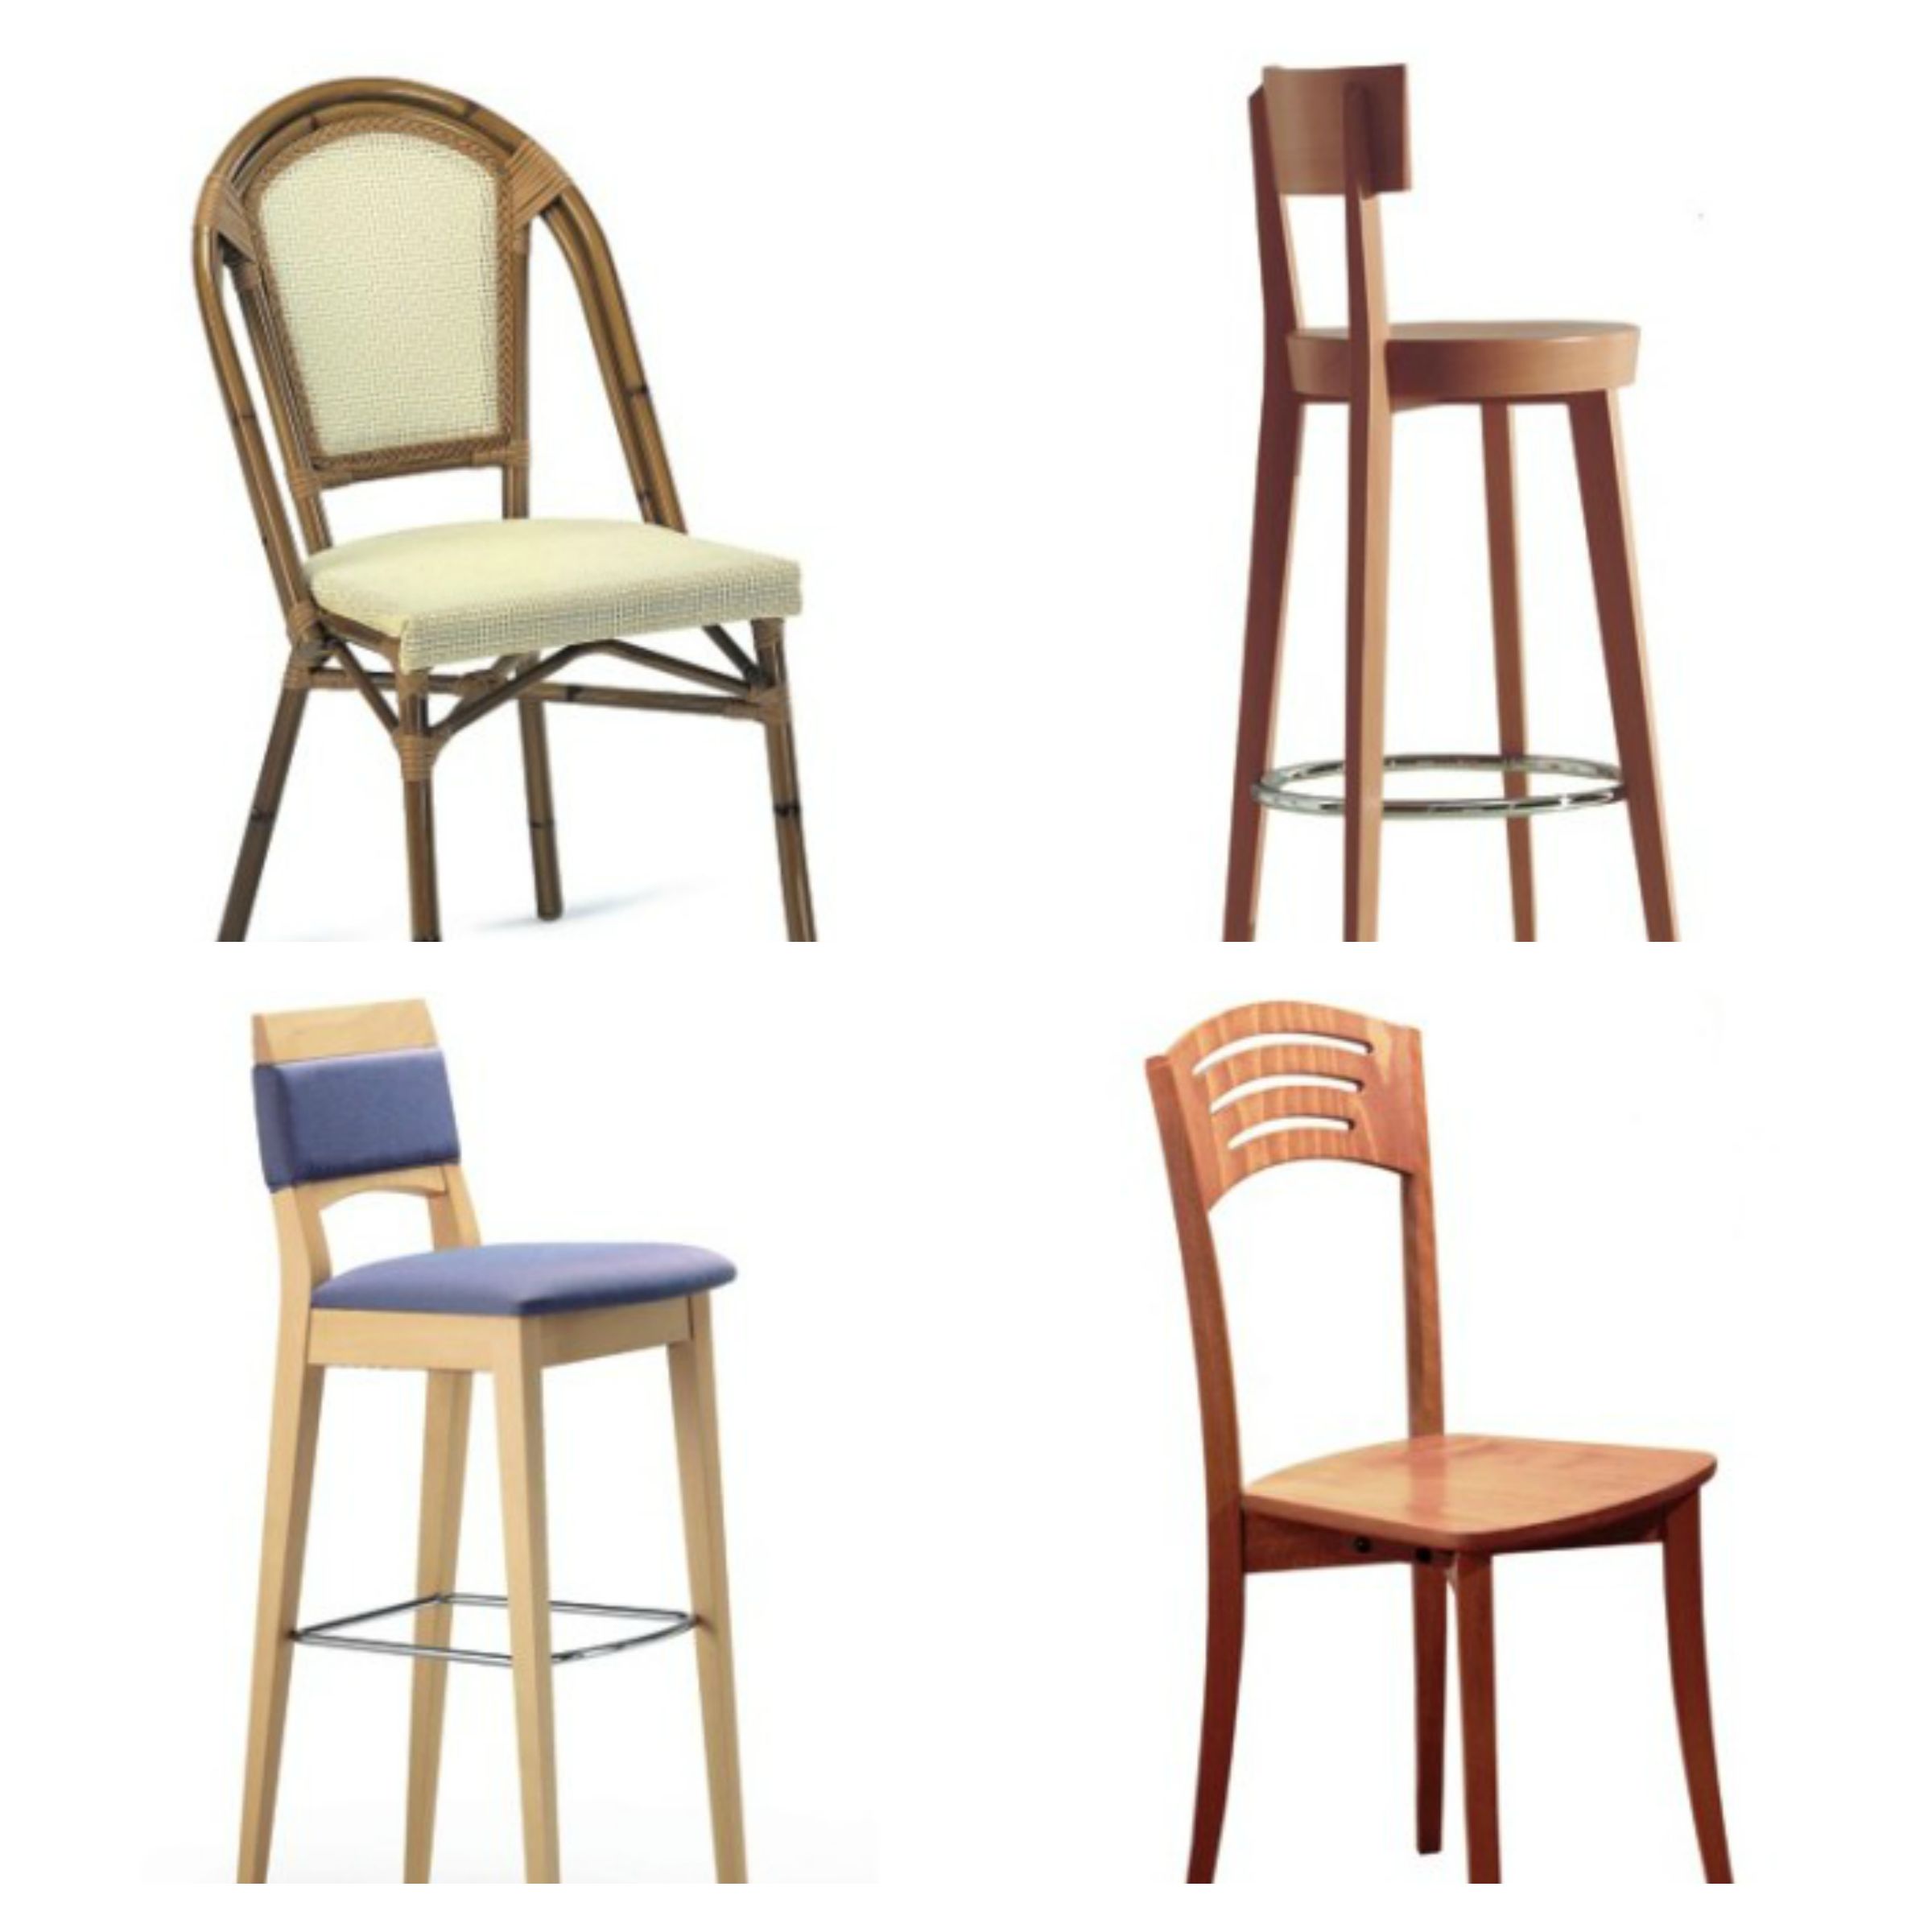 sedie in legno moderne classiche rustiche emerson sedie